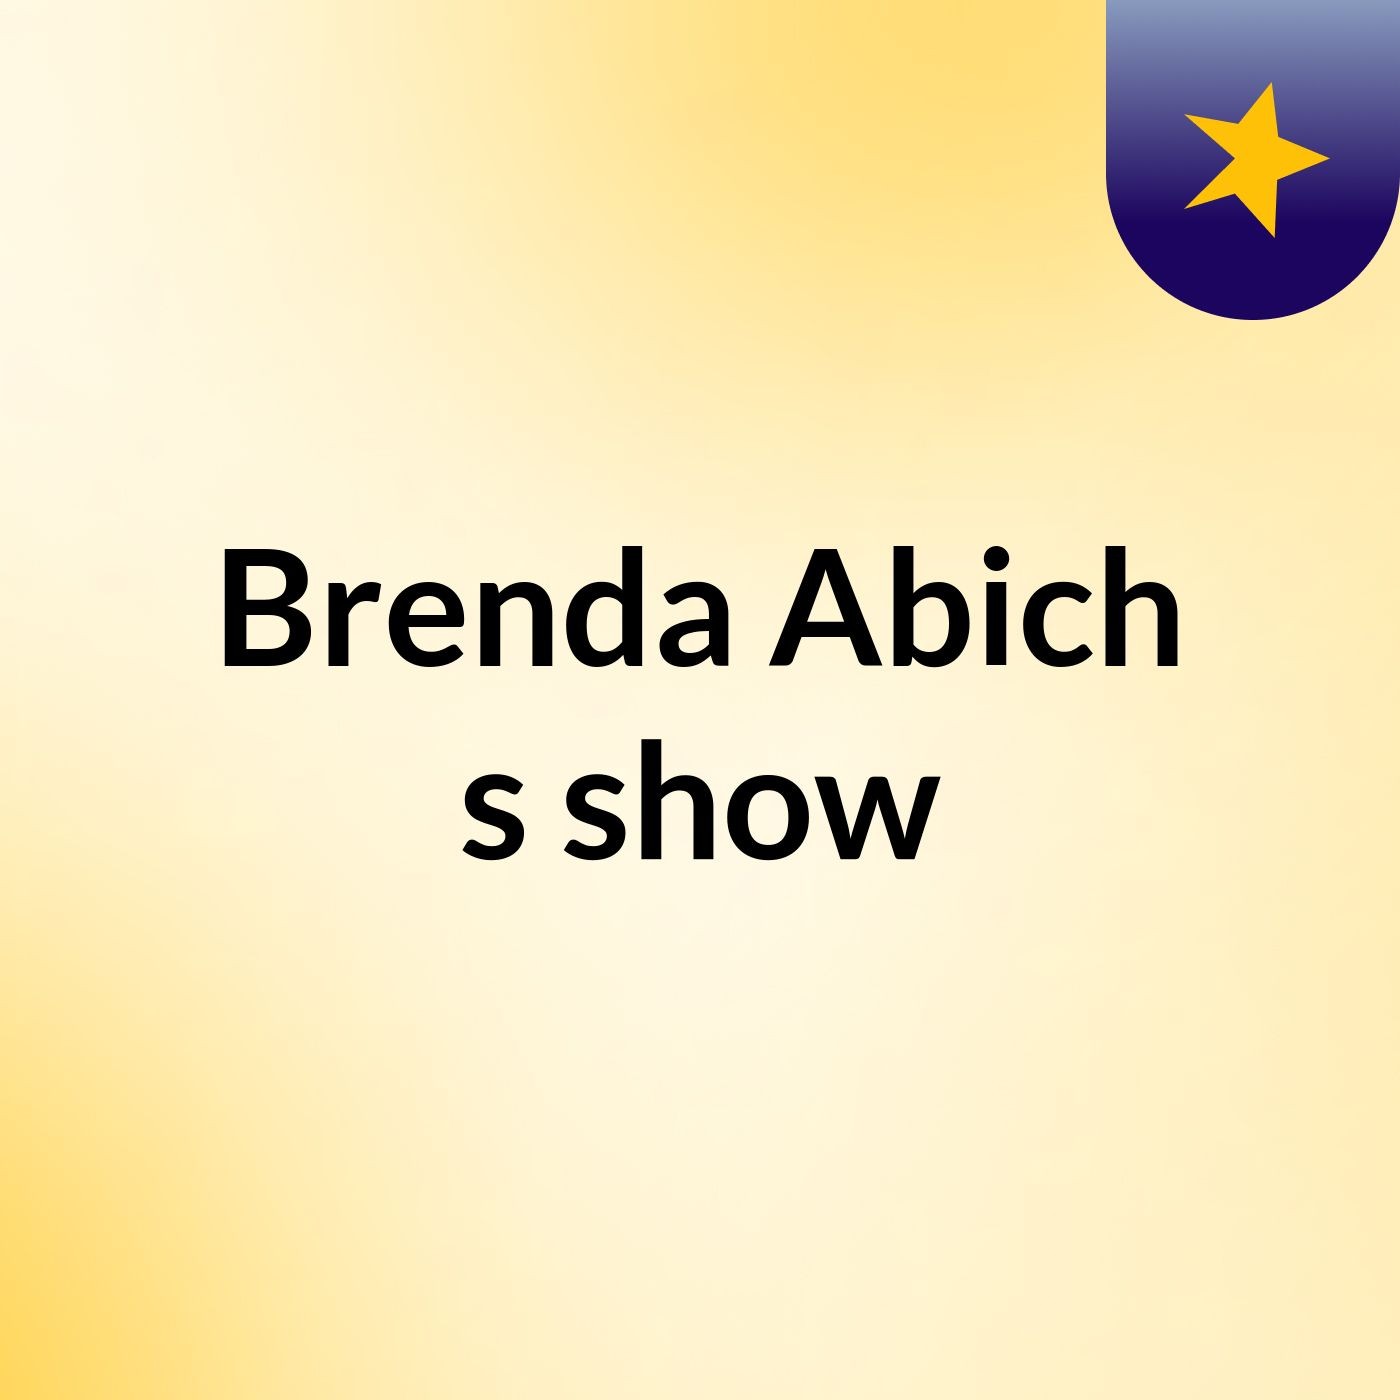 Brenda Abich's show